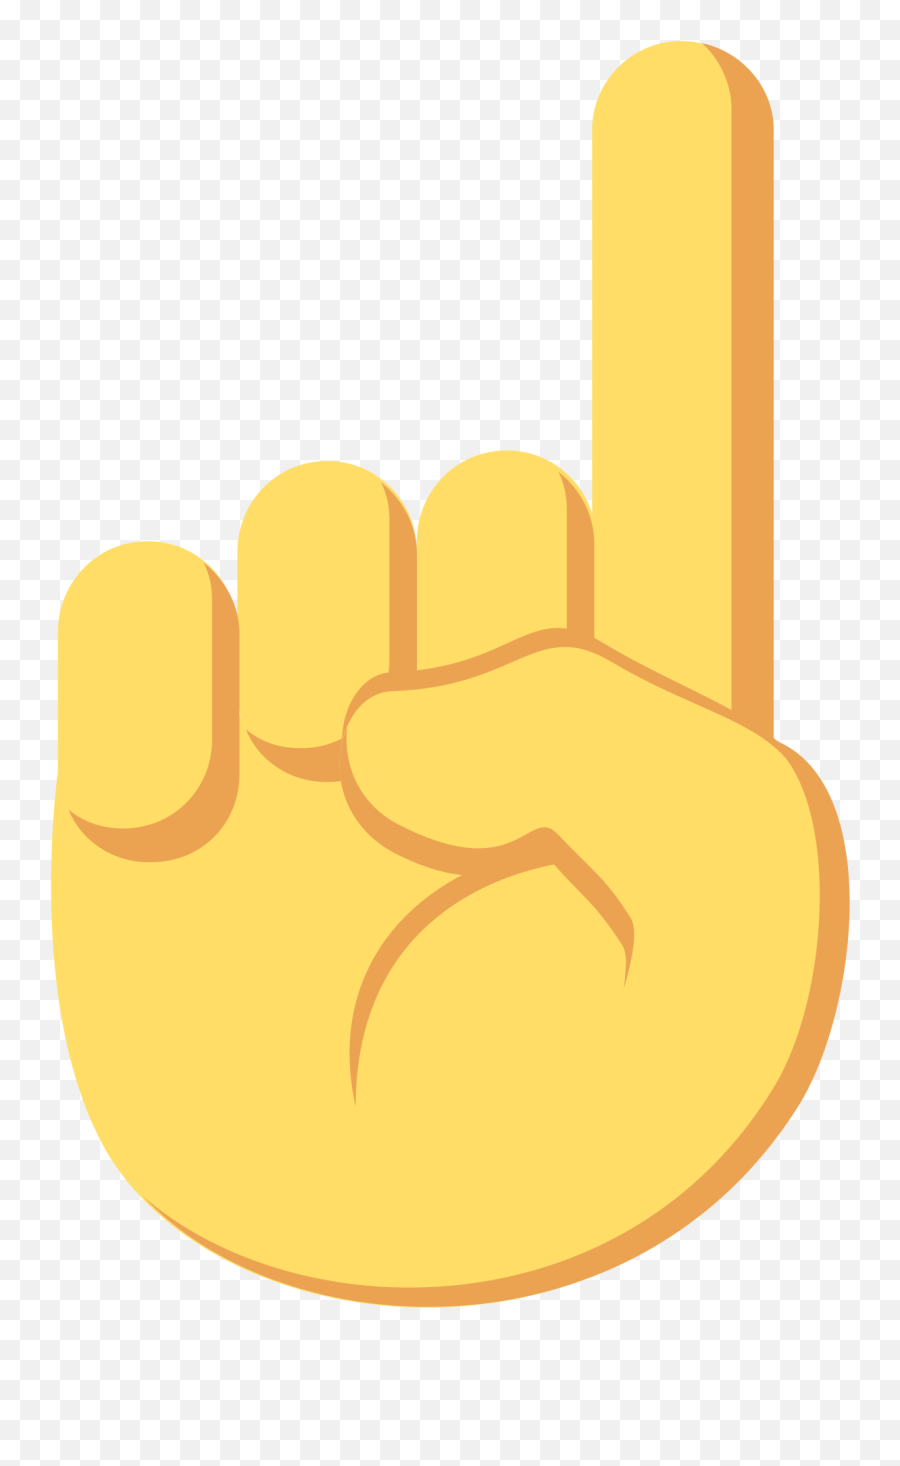 Hand Pointing Down Emoji Png Image - Emoji Seta Para Cima,Praying Hands Emoji Png